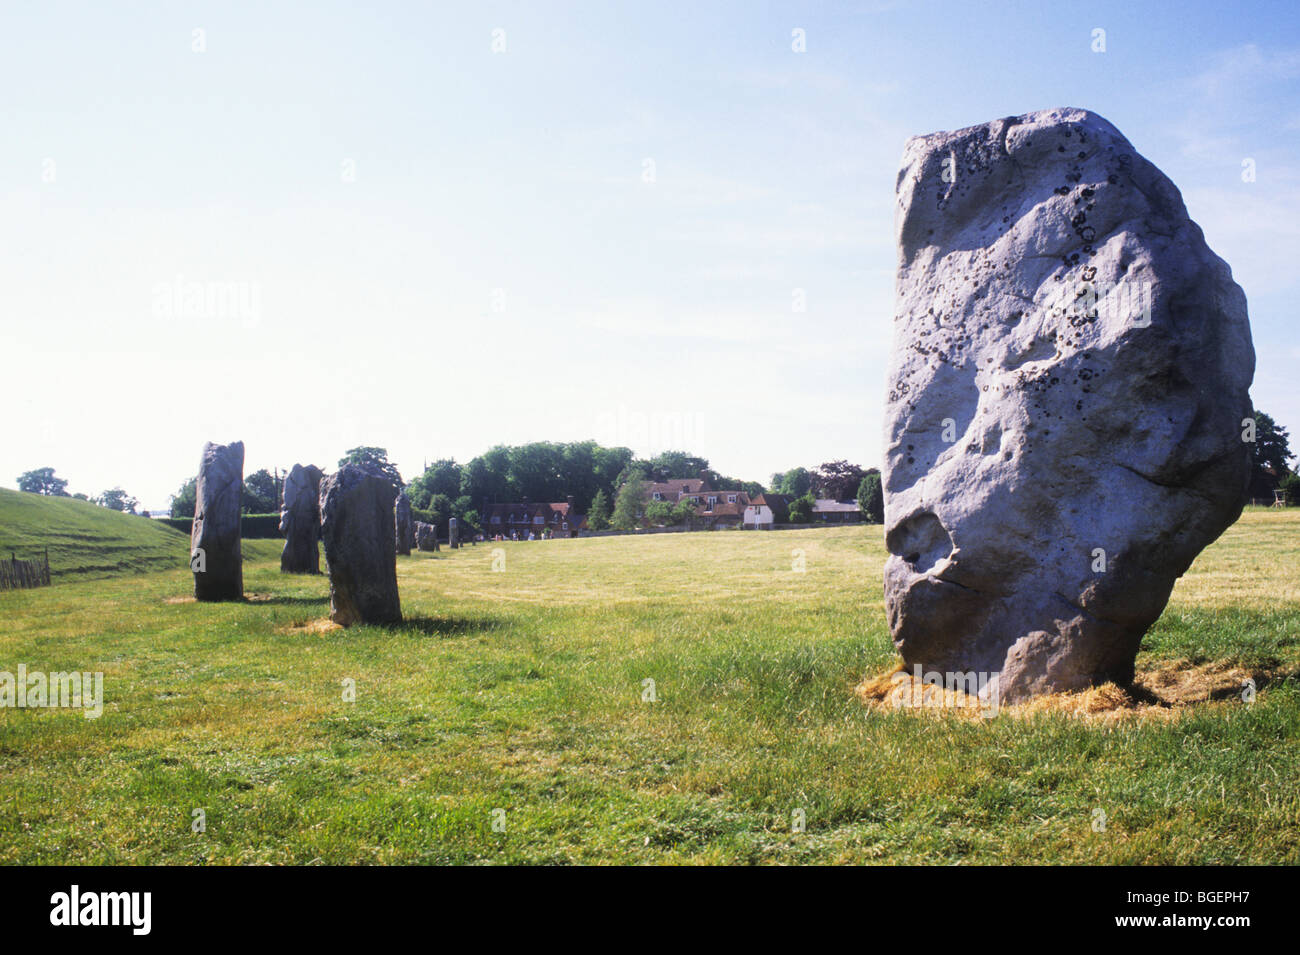 Avebury Wiltshire inglese preistoria preistorica stone circle cerchi Inghilterra pietre sarsen religione sito religioso Foto Stock